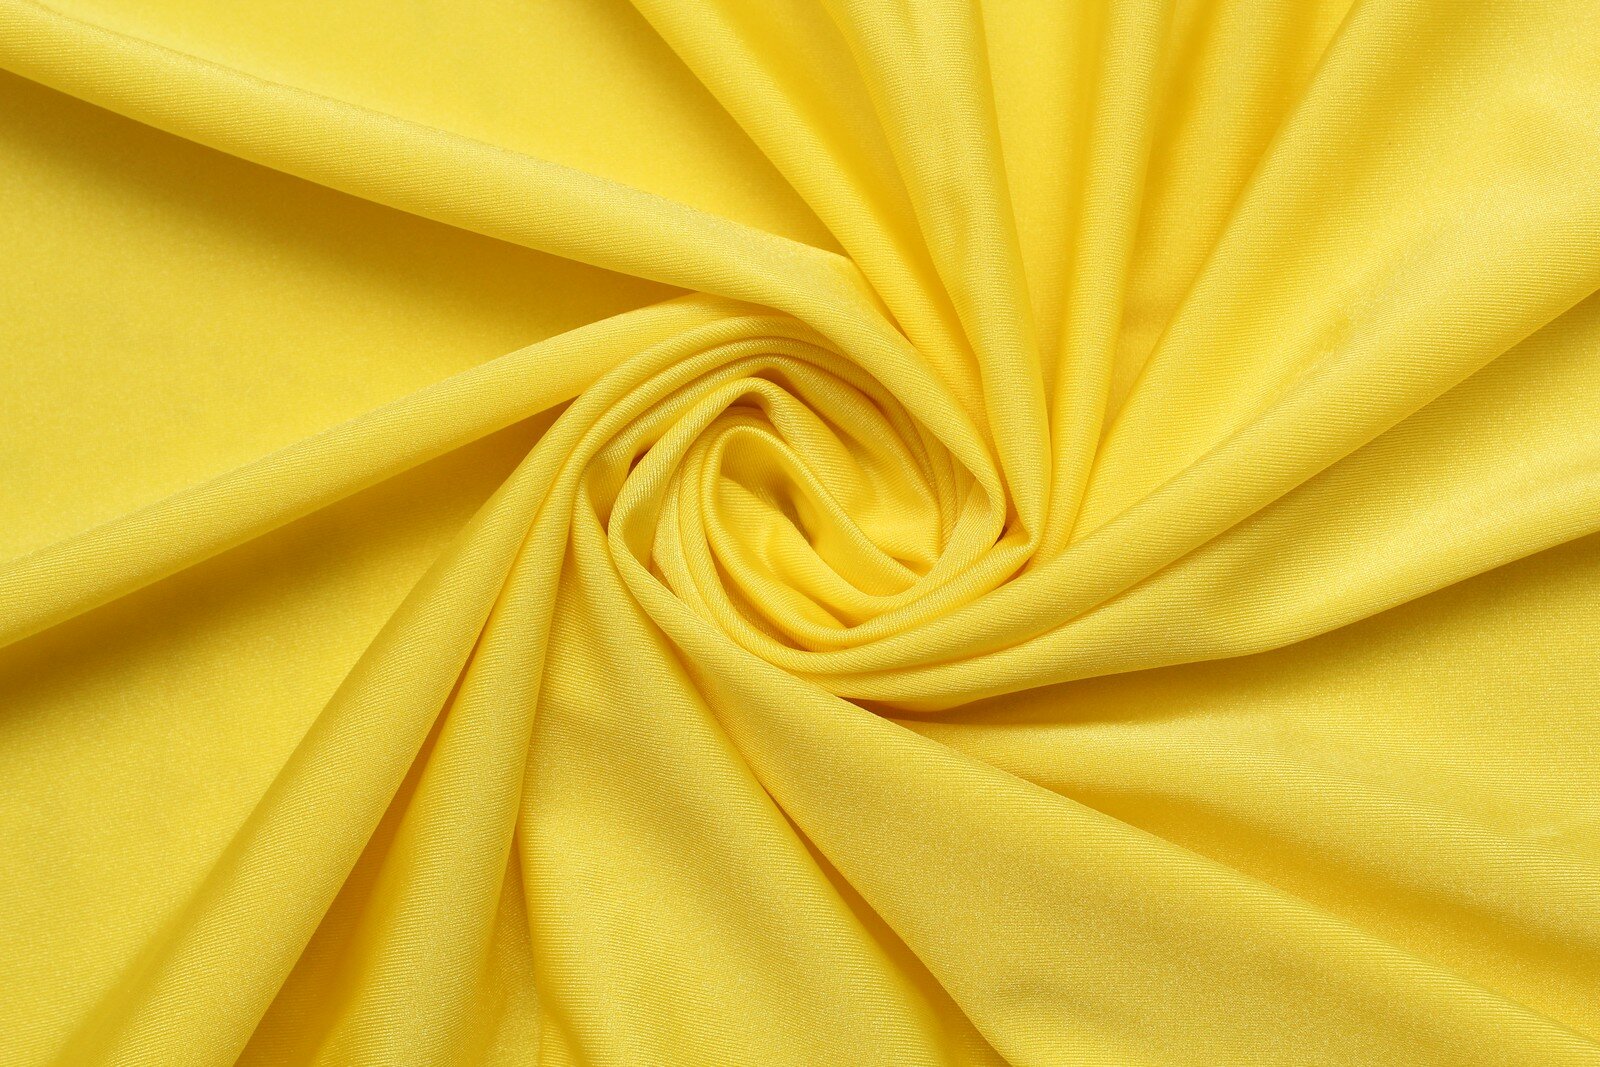 Ткань Лайкра-бифлекс лимонно-жёлтый, ш151см, 0,5 м